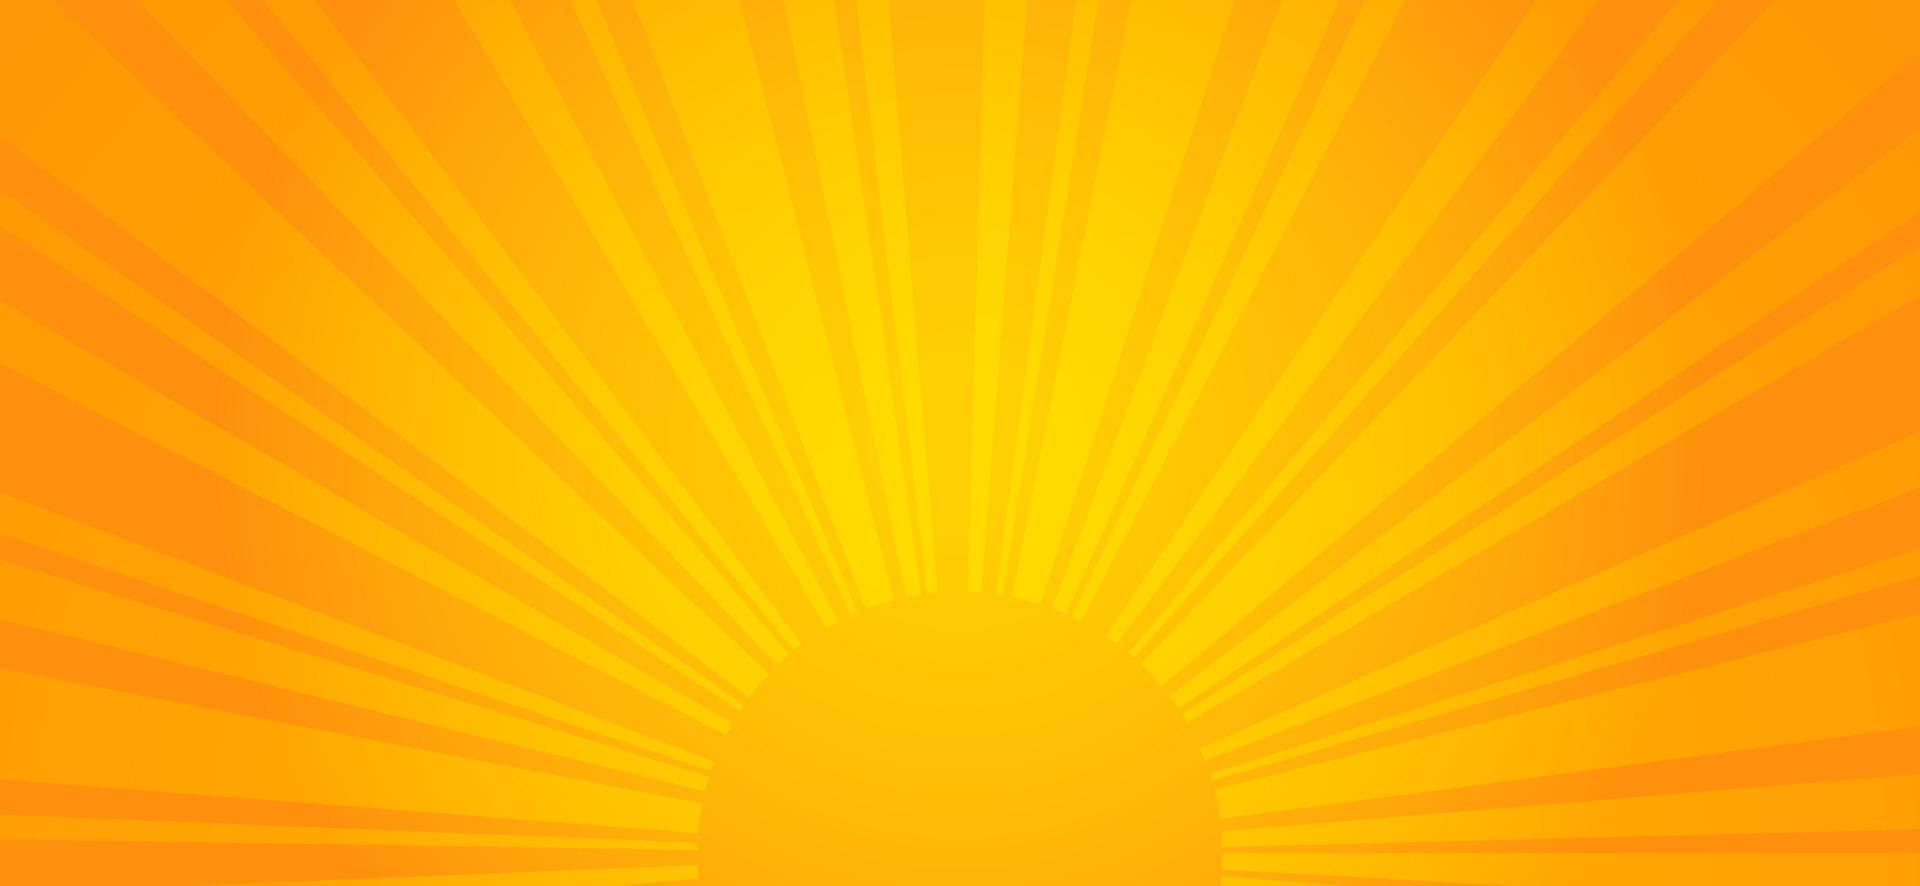 fondo naranja del amanecer. ilustración vectorial de energía solar. vector